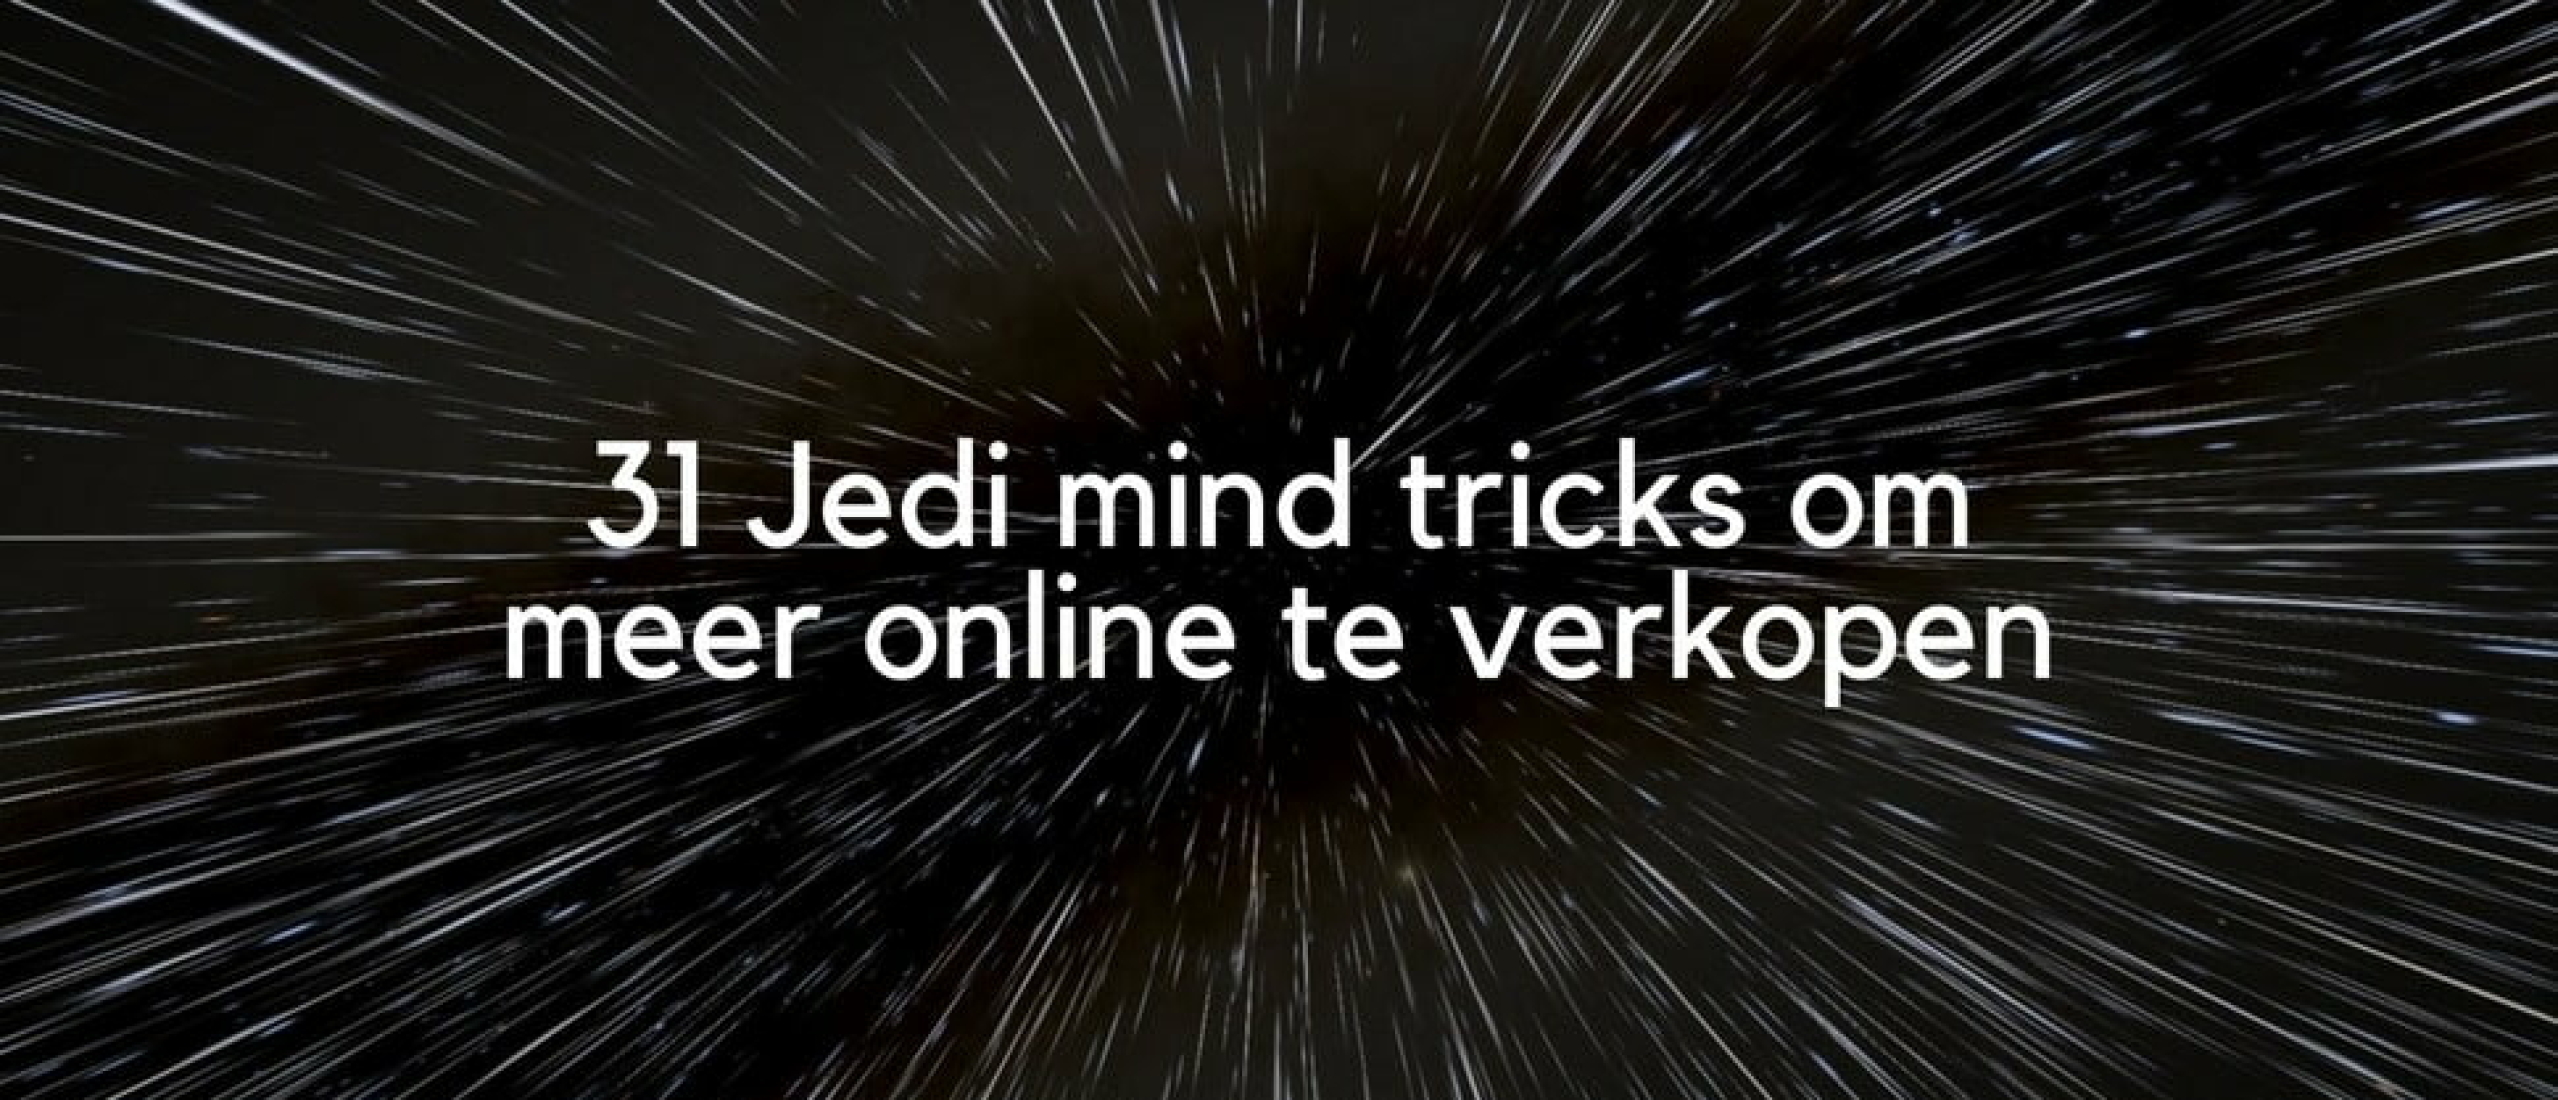 Meer online verkopen: 31 Jedi mind tricks